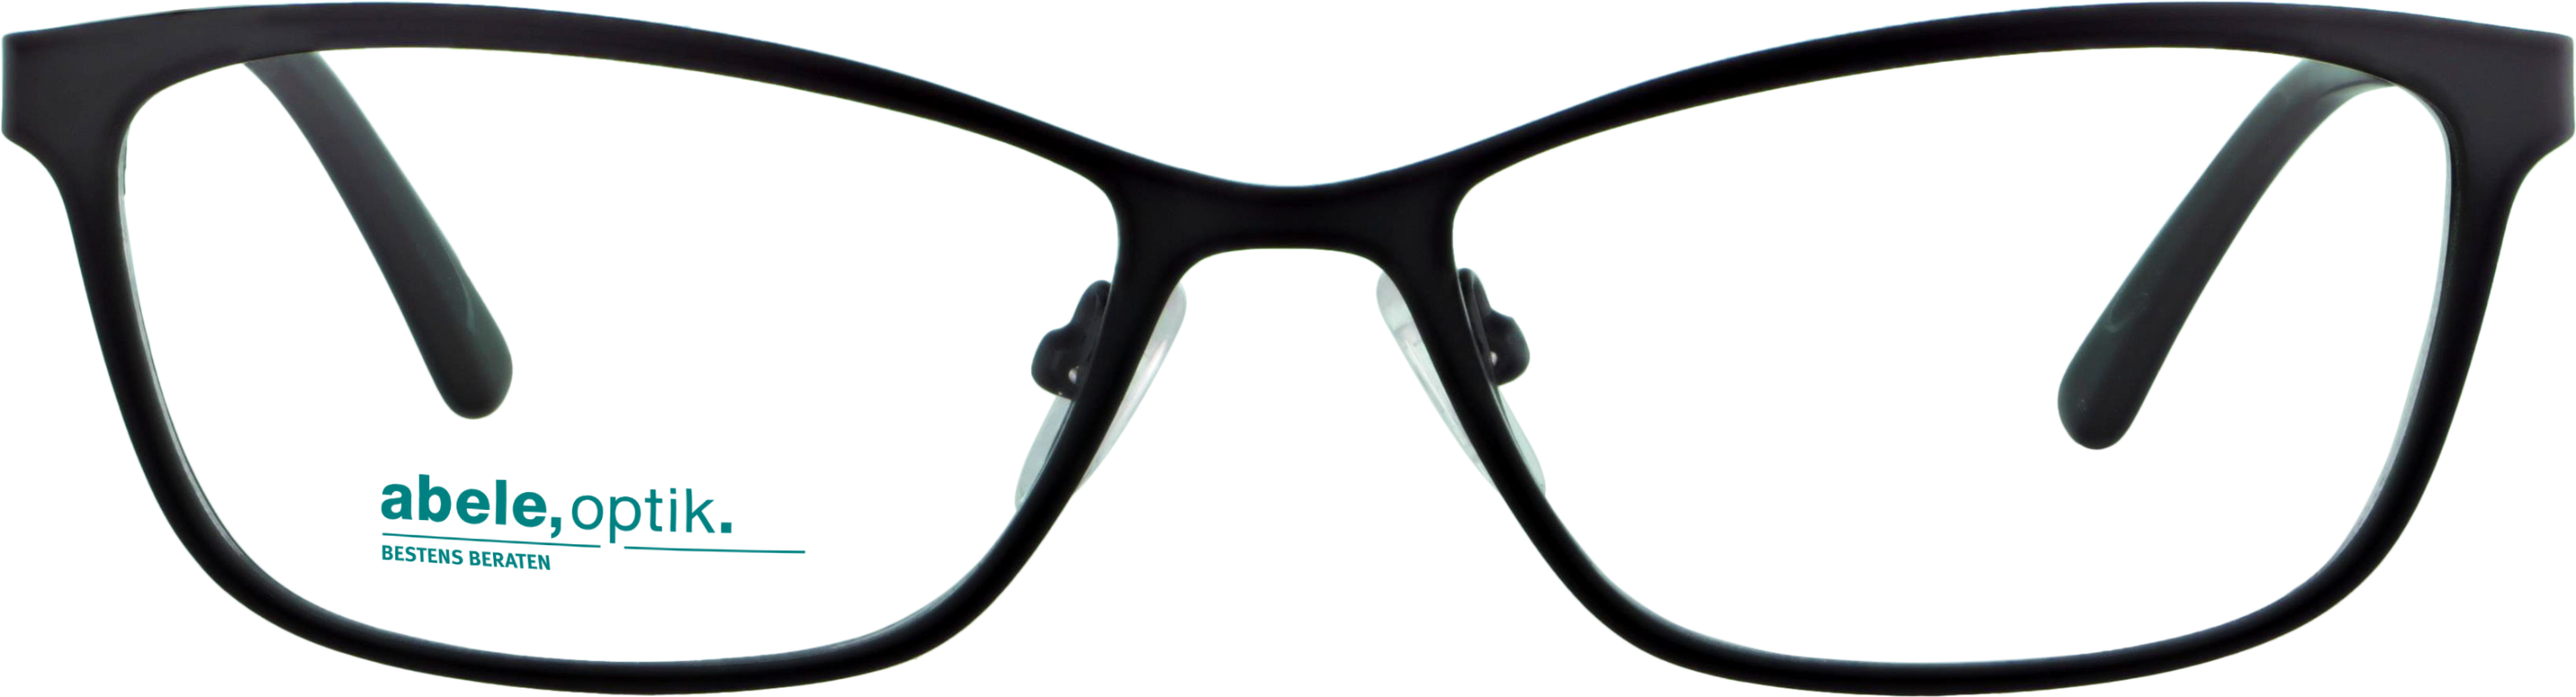 Das Bild zeigt die Korrektionsbrille 142221 von der Marke Abele Optik in schwarz matt.